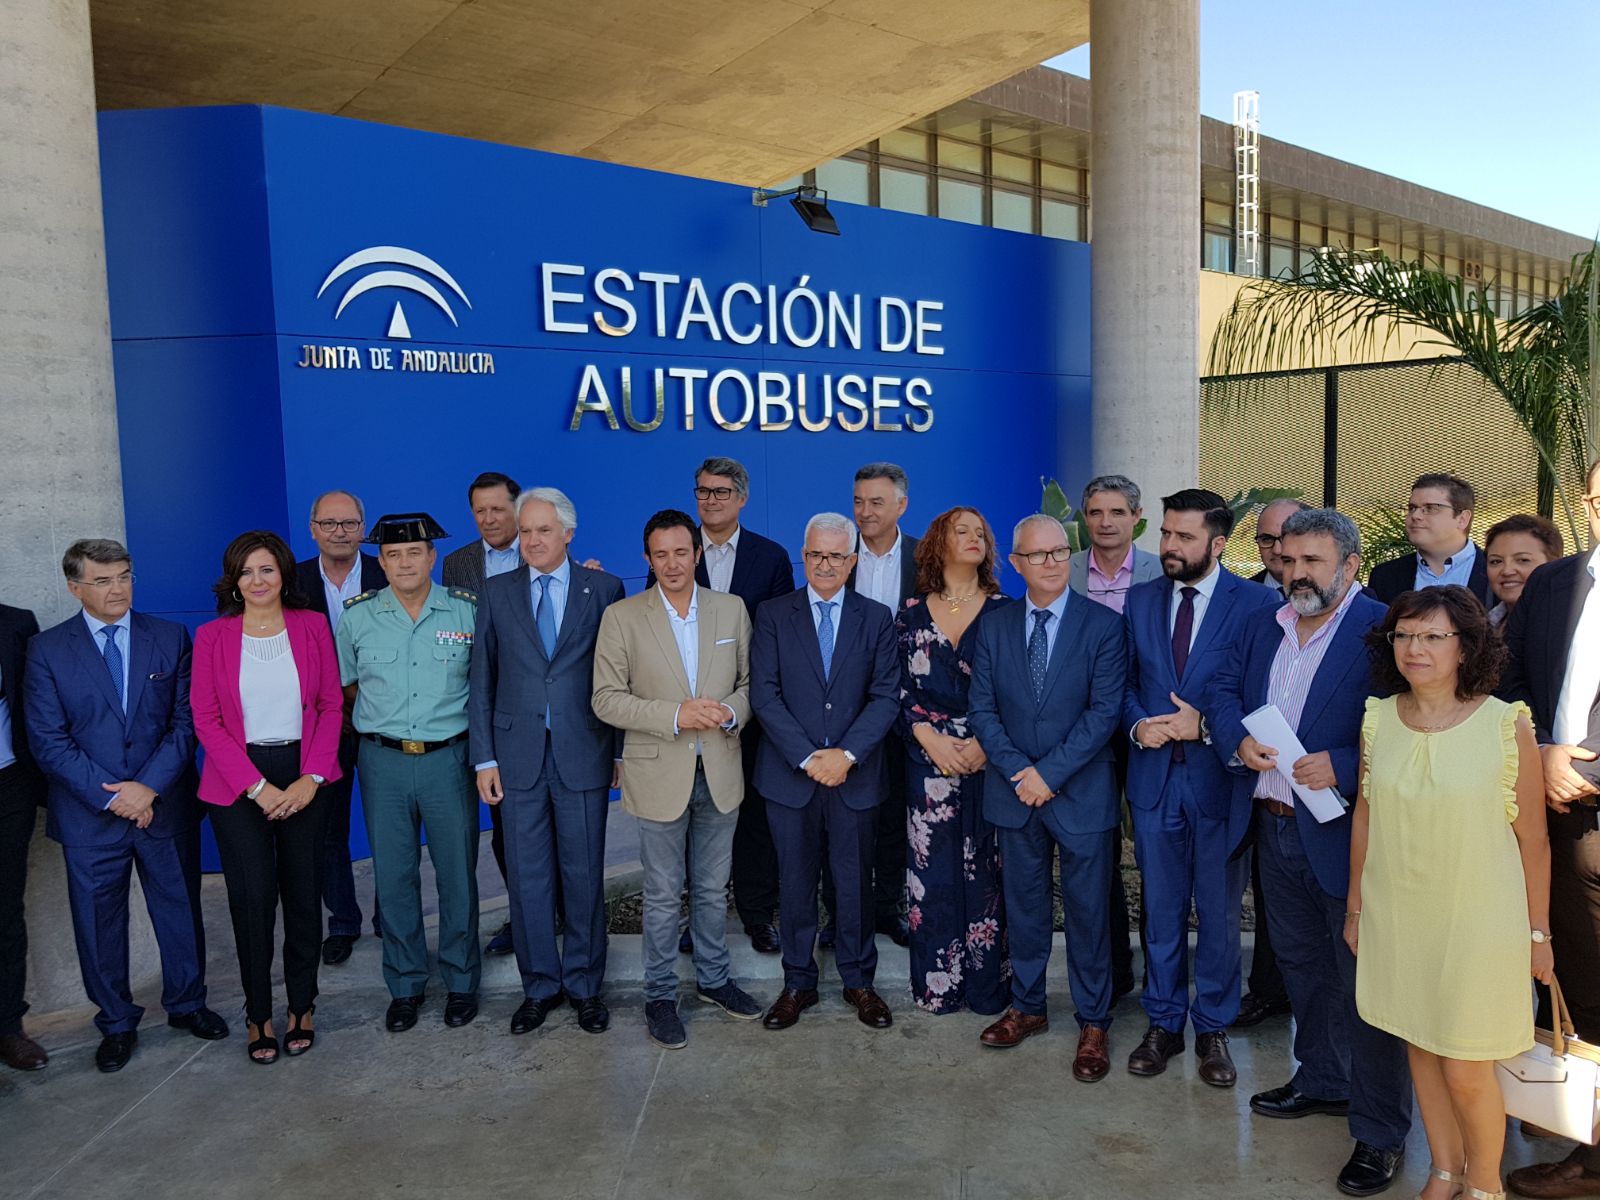 Inauguración de la nueva estación de autobuses de Cádiz que dará servicio a más de un millón de viajeros al año